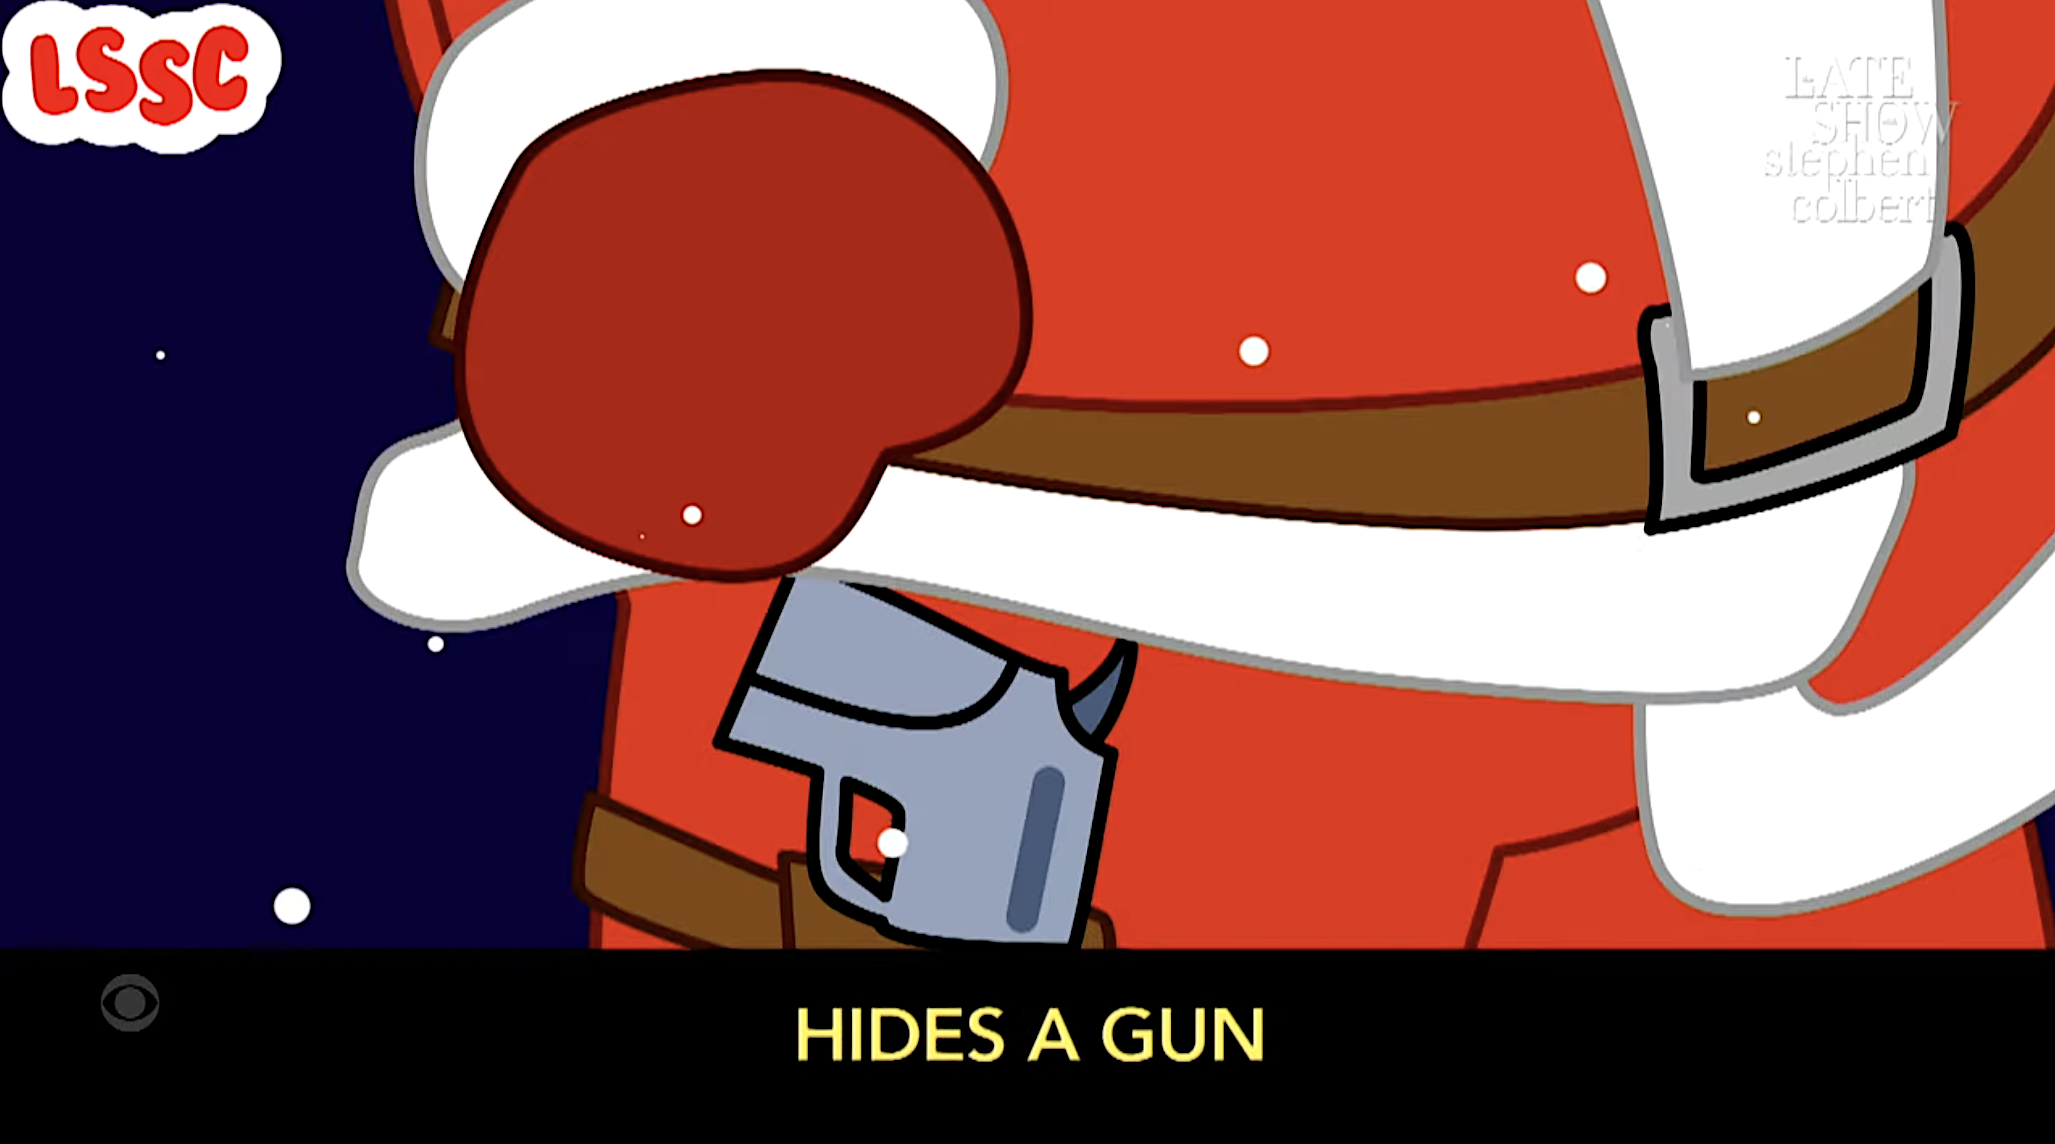 Santa has a gun